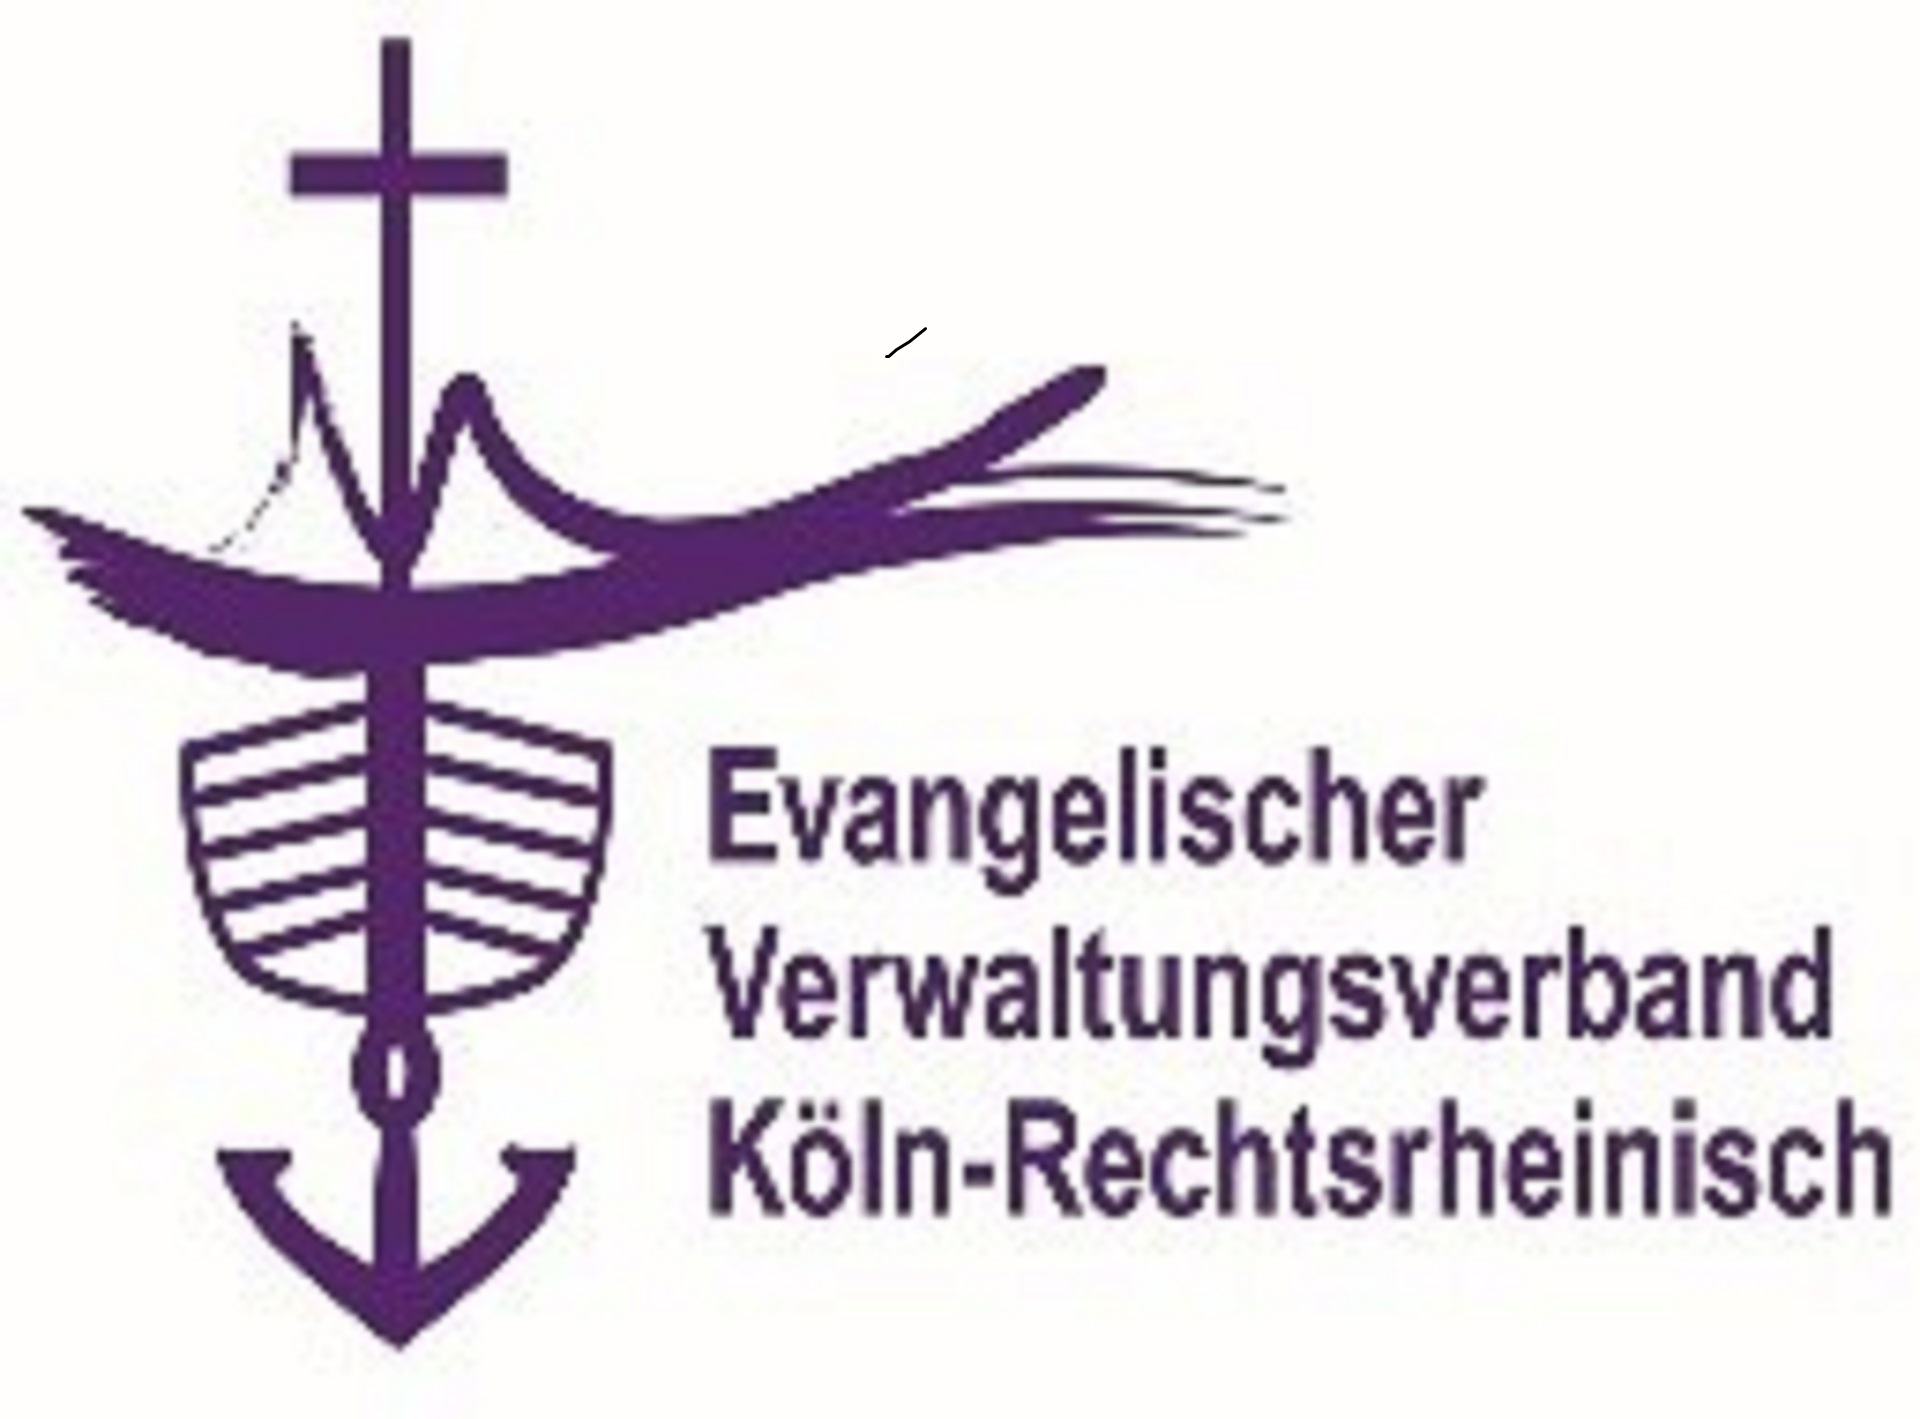 Ev. Verwaltungsverband Köln-Rechtsrheinisch